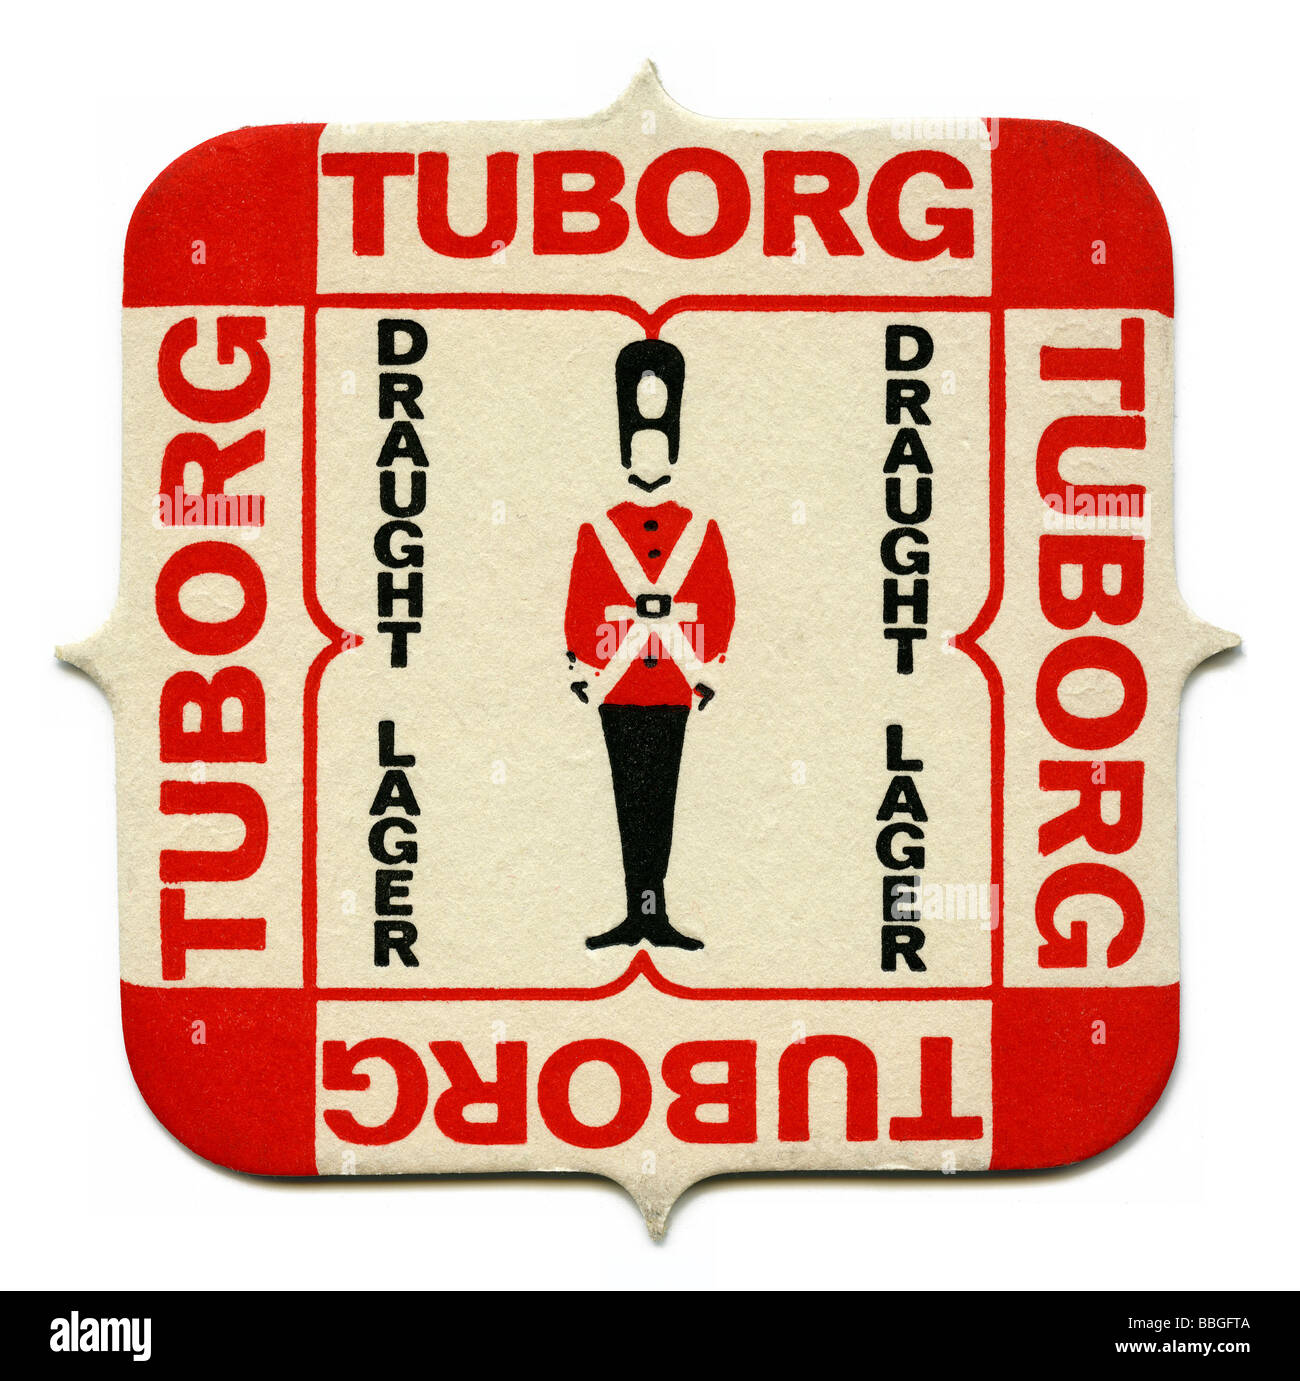 Old beermat for Tuborg Draught lager, Copenhagen, Denmark Stock Photo